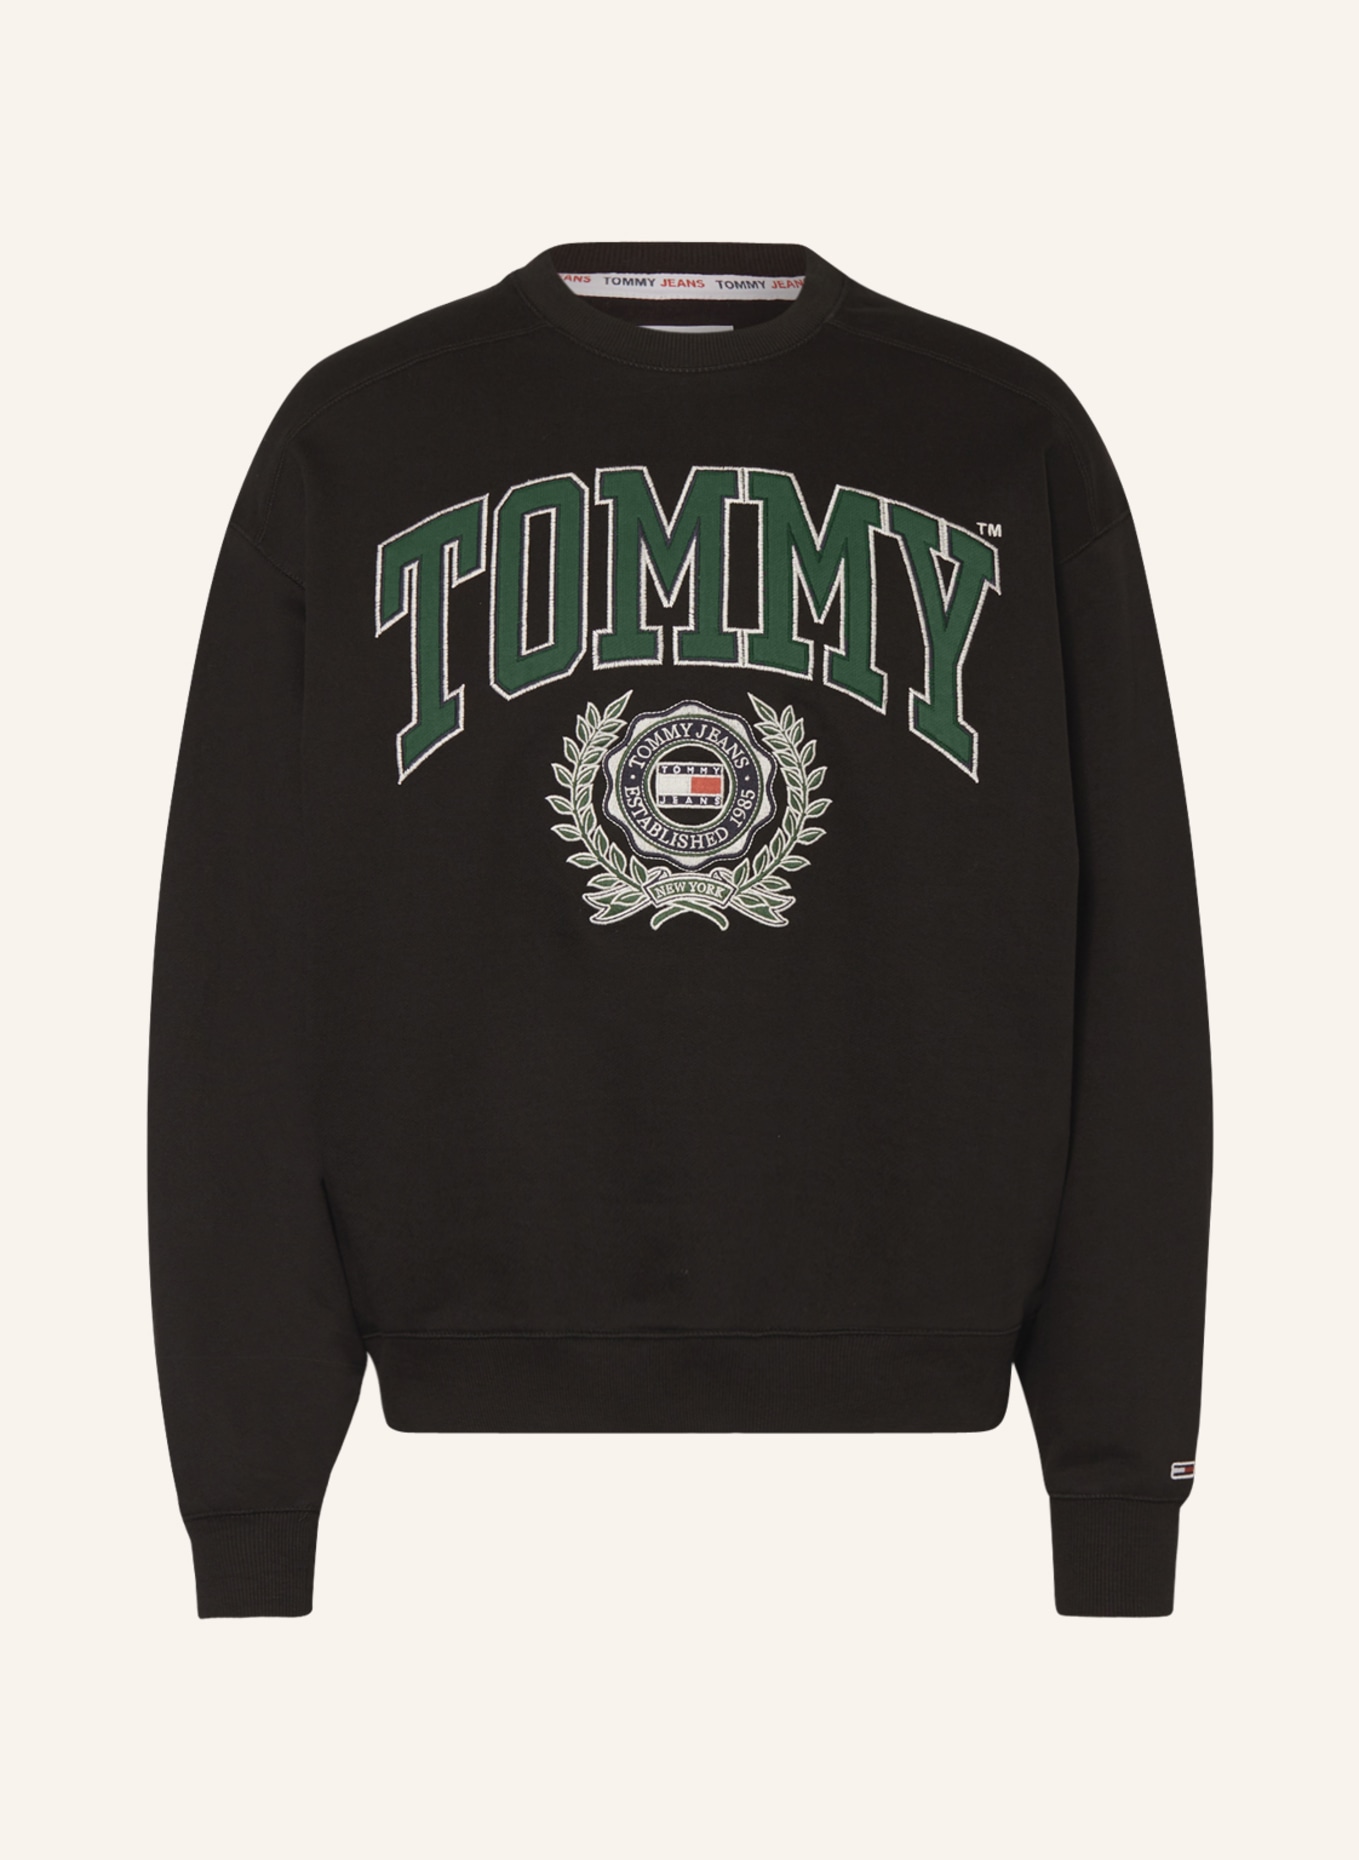 TOMMY JEANS Sweatshirt, Farbe: SCHWARZ/ GRÜN (Bild 1)